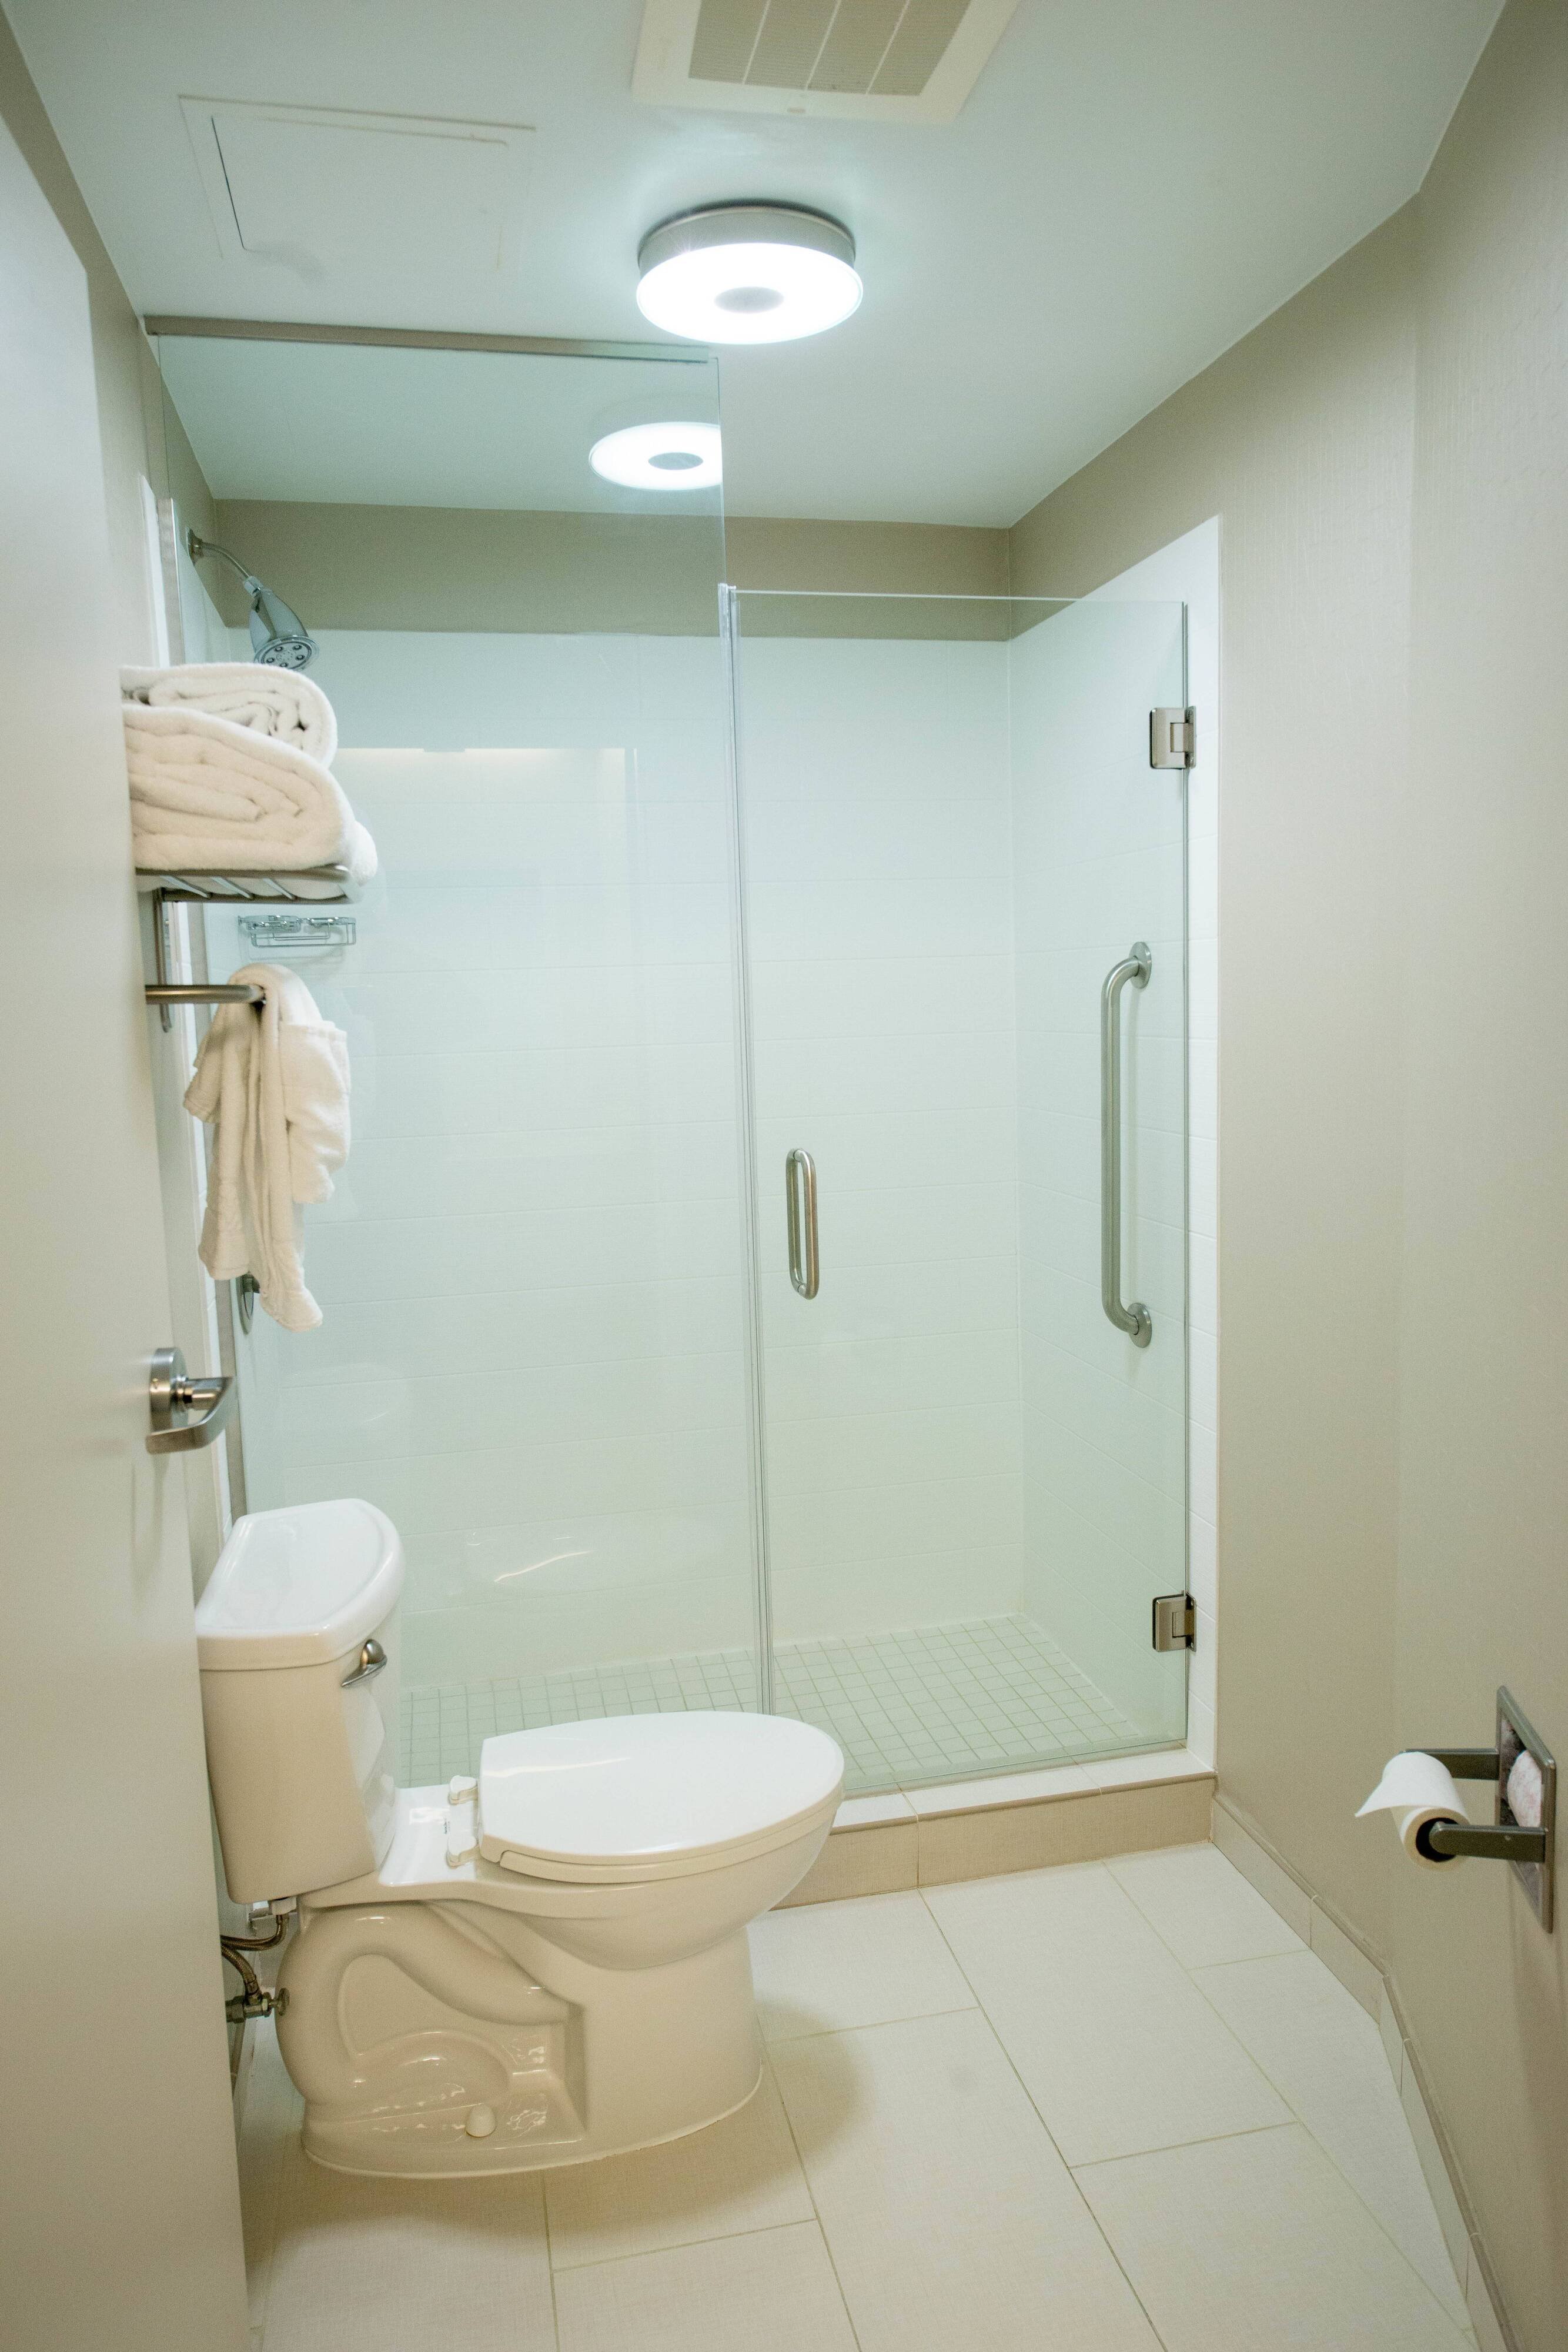 Suite Bathroom - Walk-In Shower